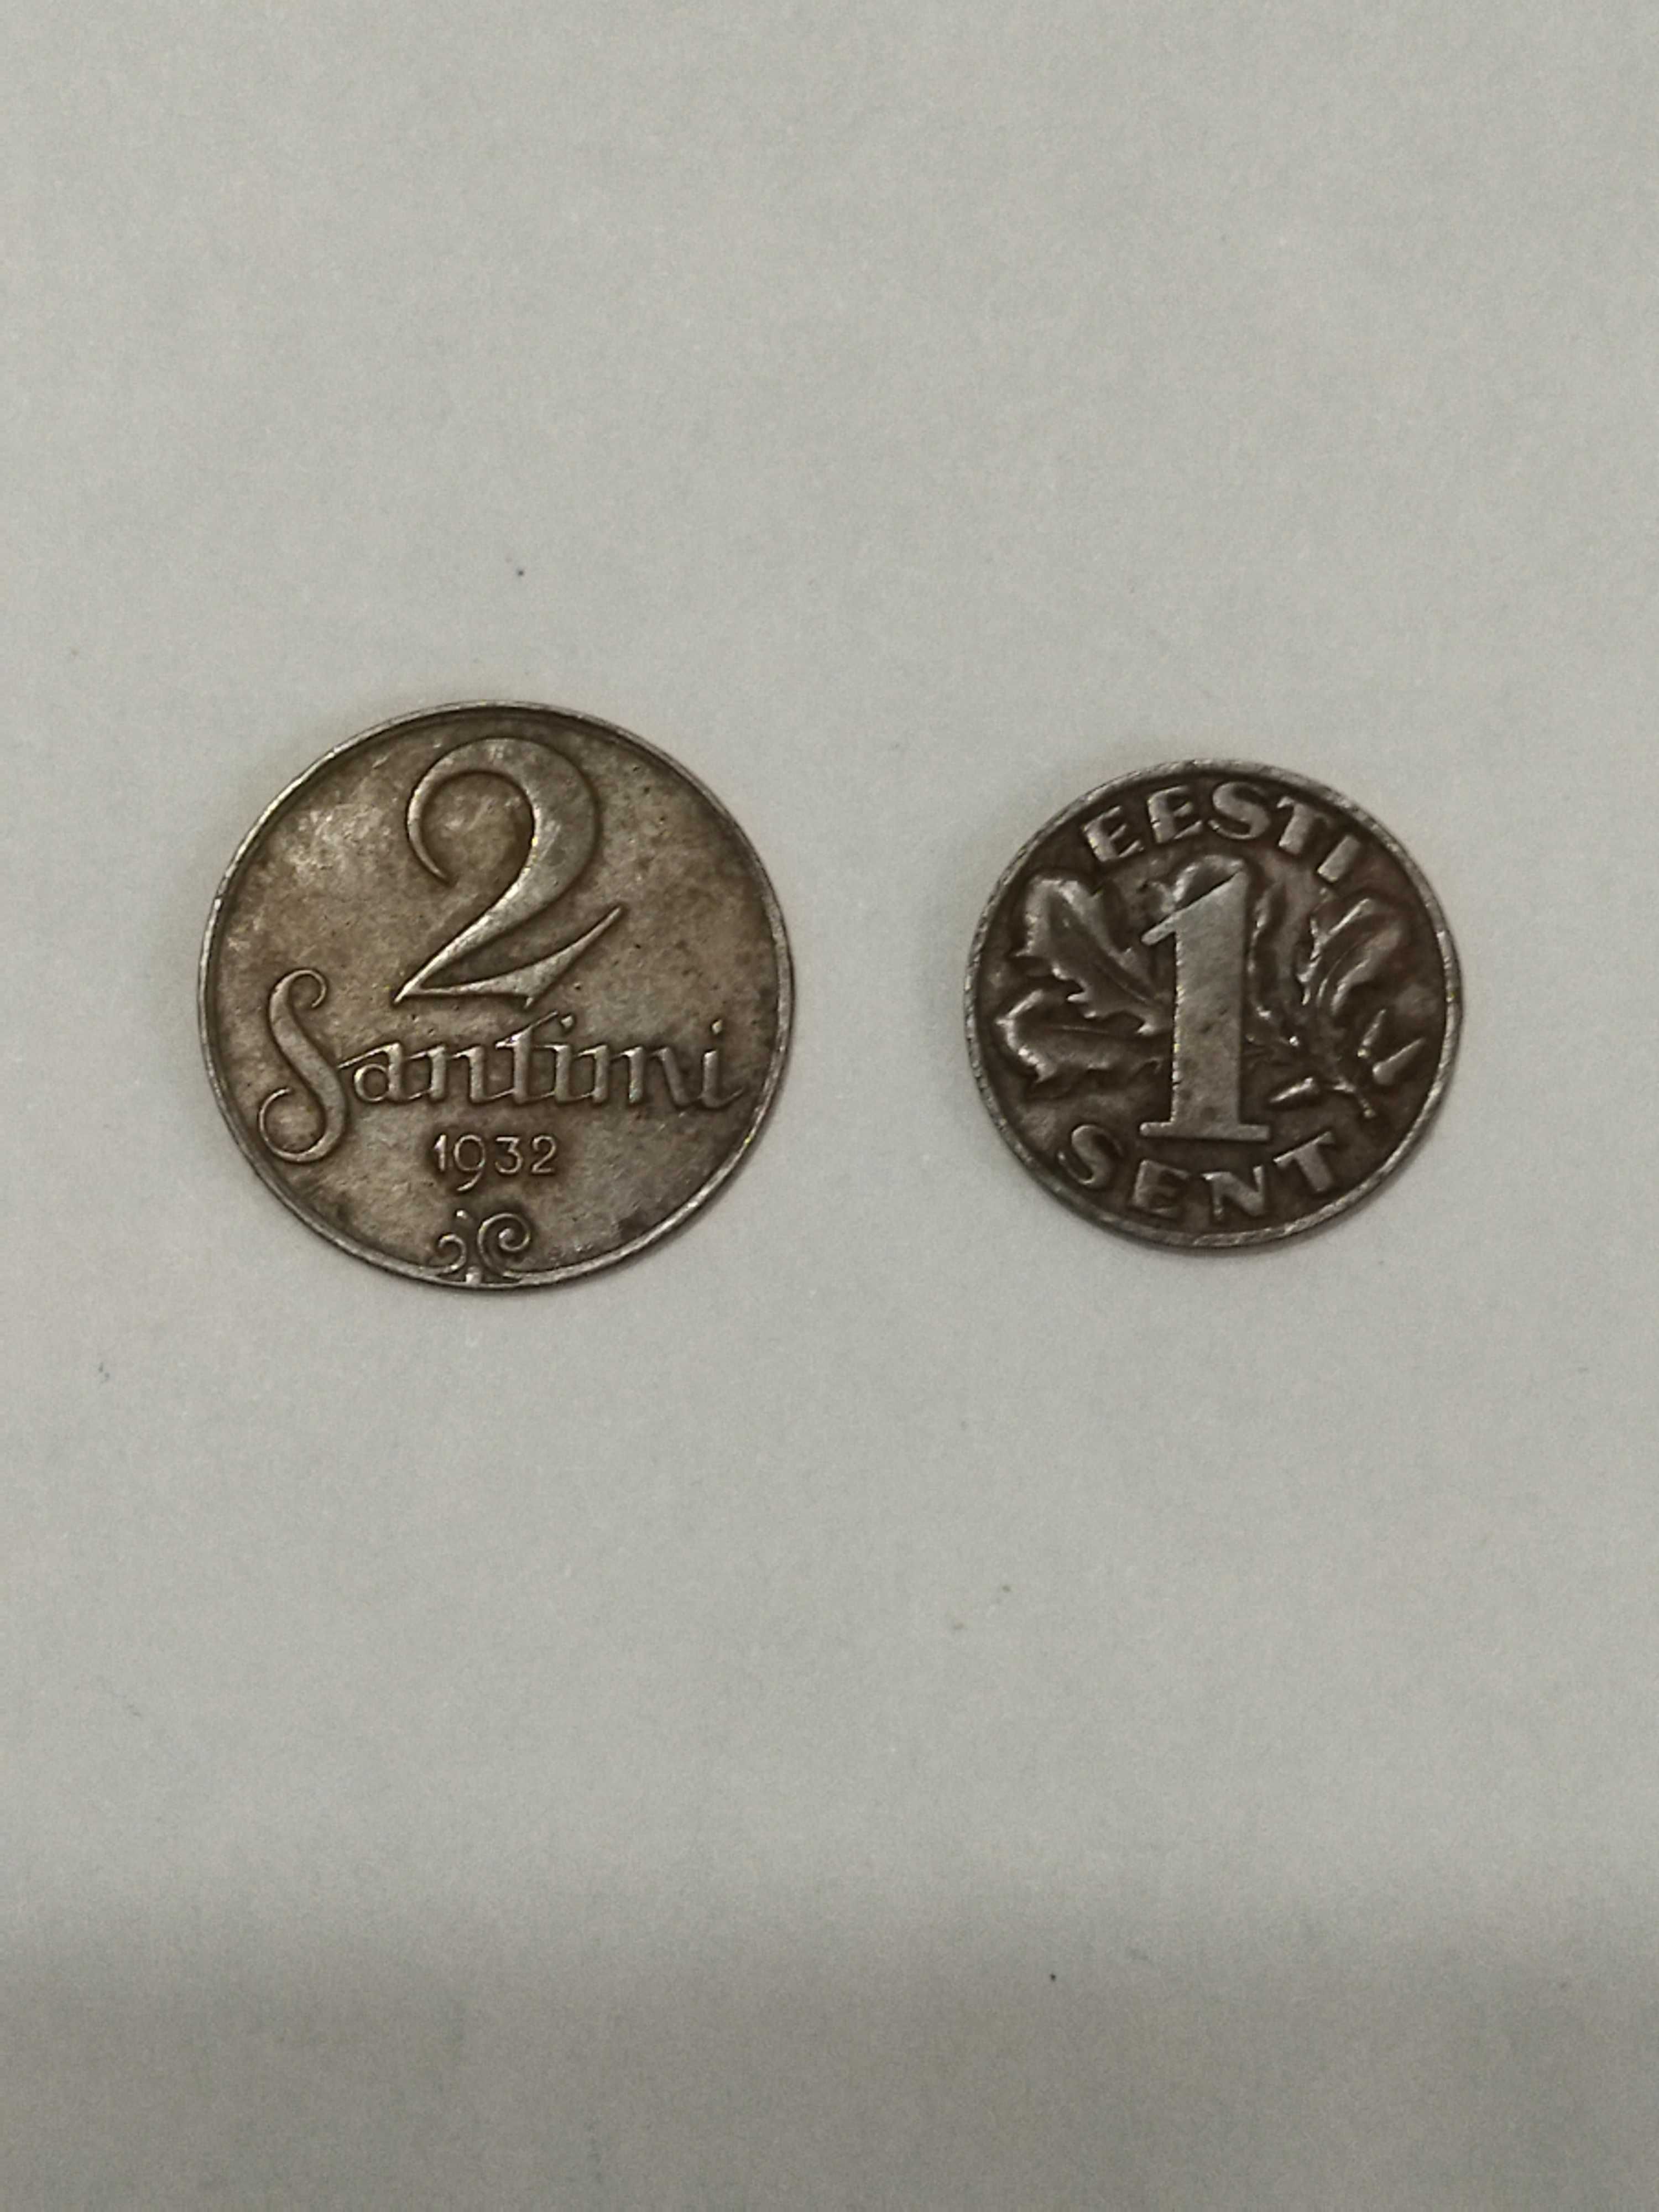 Монеты Нидерланды, Латвия, Эстония